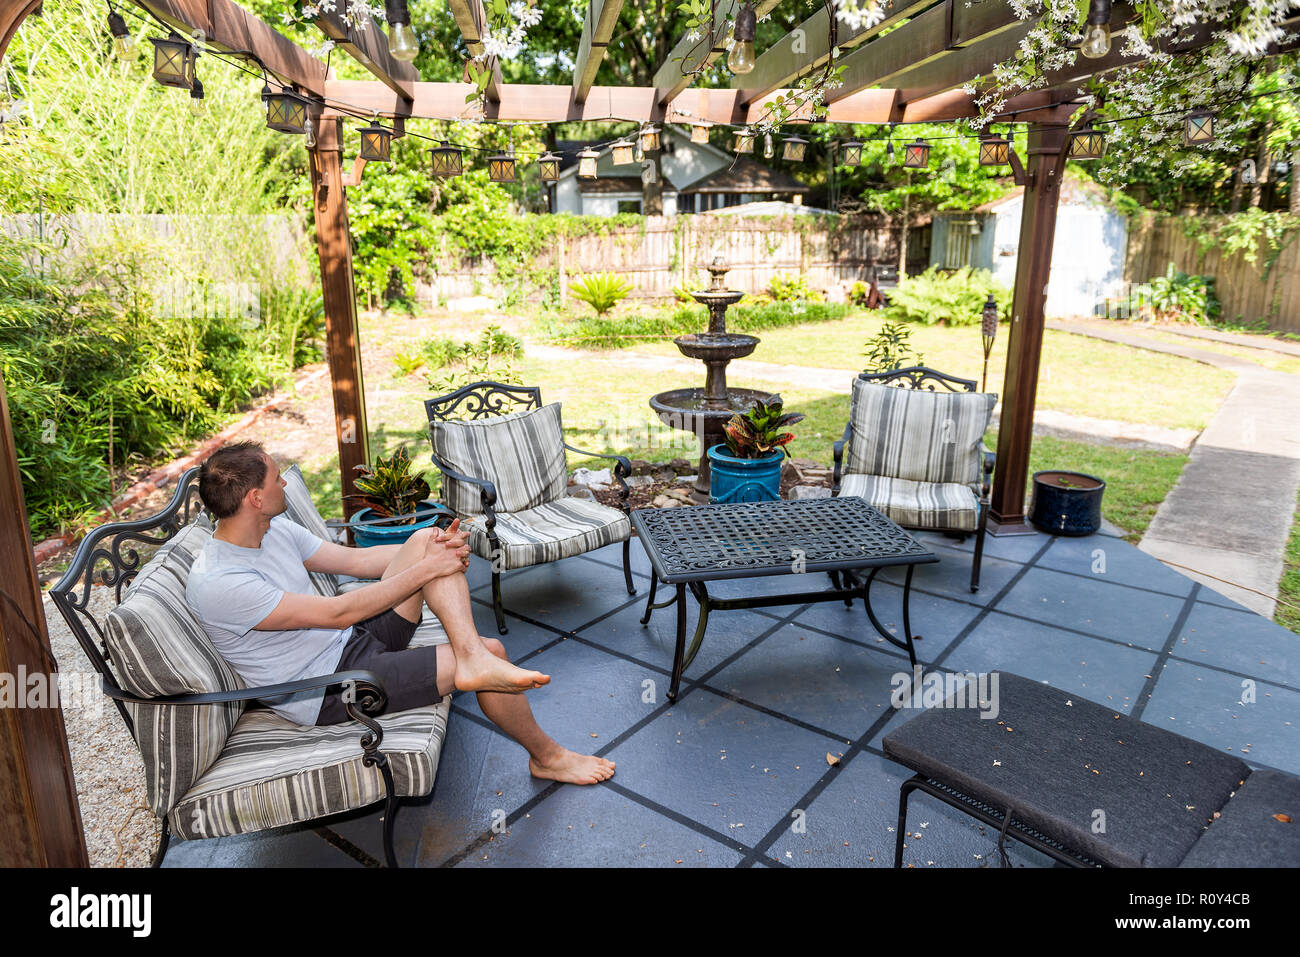 Junger Mann sitzen auf der Terrasse Lounge Chair in outdoor Frühling Blumen Garten im Hinterhof des Hauses zen mit Springbrunnen, Pergola Vordach Pavillon, Tisch, pla Stockfoto